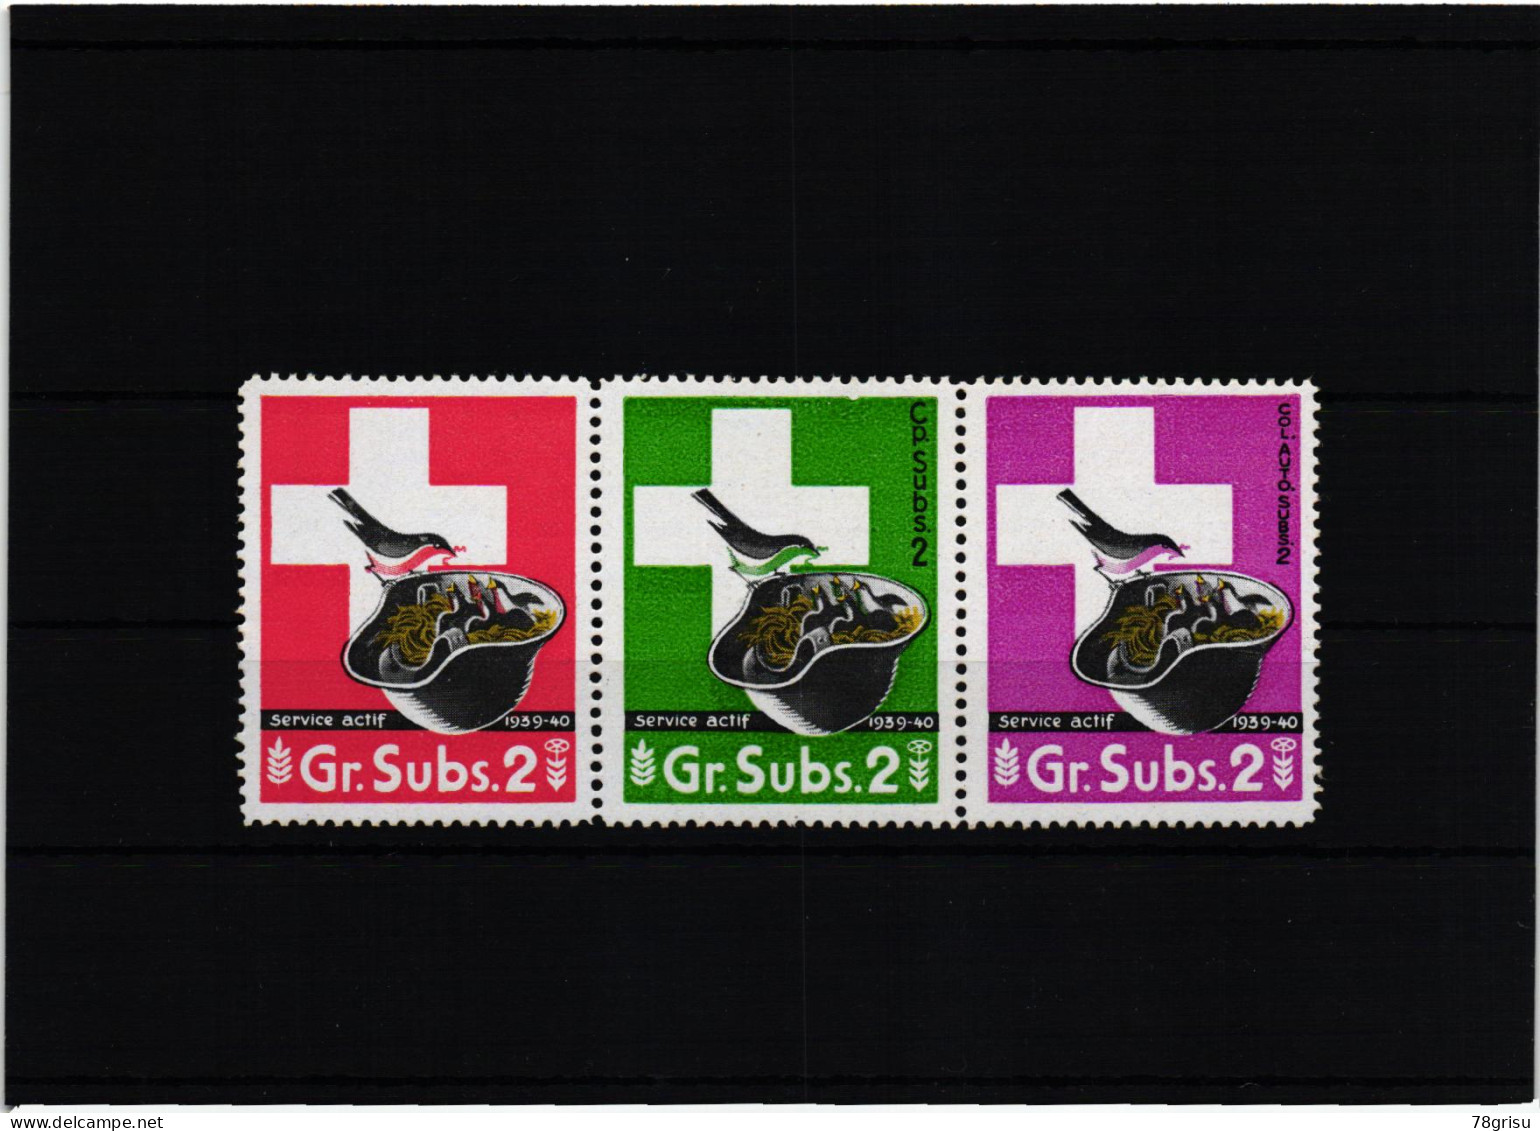 Schweiz Soldatenmarken, GR.Subs. Cp.Subs. Col.Auto.Subs. 1939-40 - Vignetten